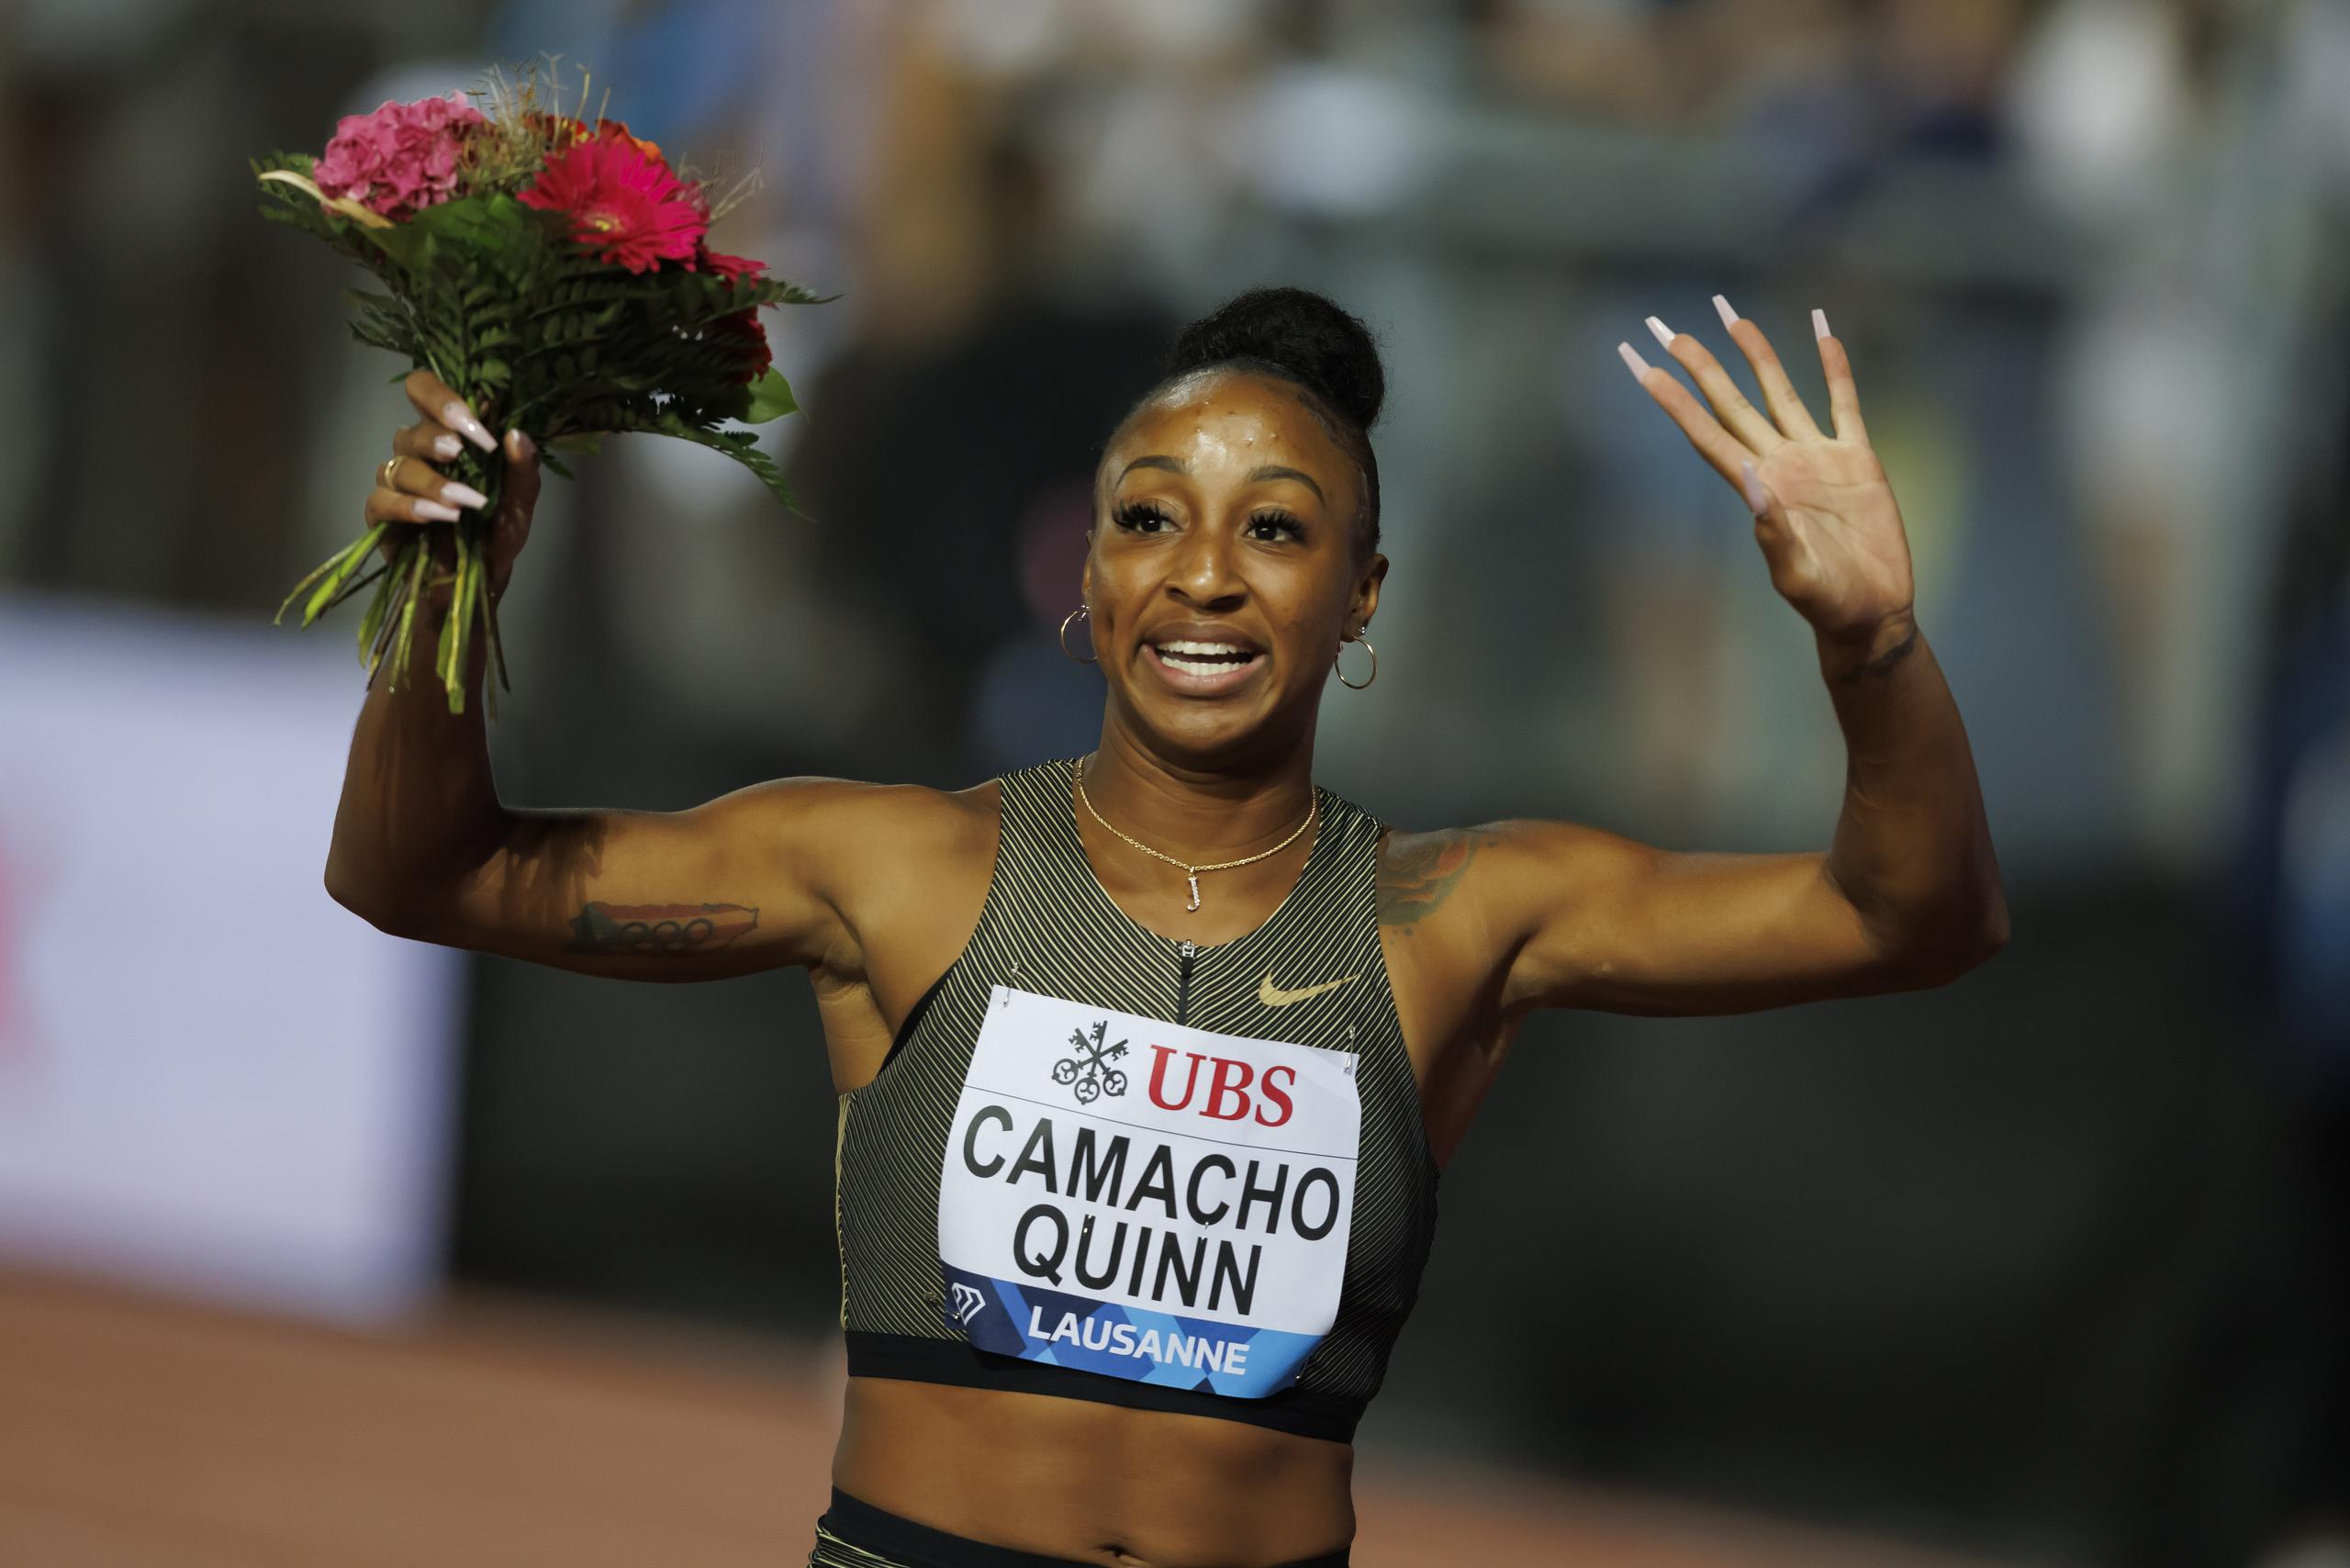 La puertorriqueña Jasmine Camacho-Quinn, saluda luego de ganar los 110 metros con vallas en Lausanne, Suiza, como parte de la Liga Diamante.